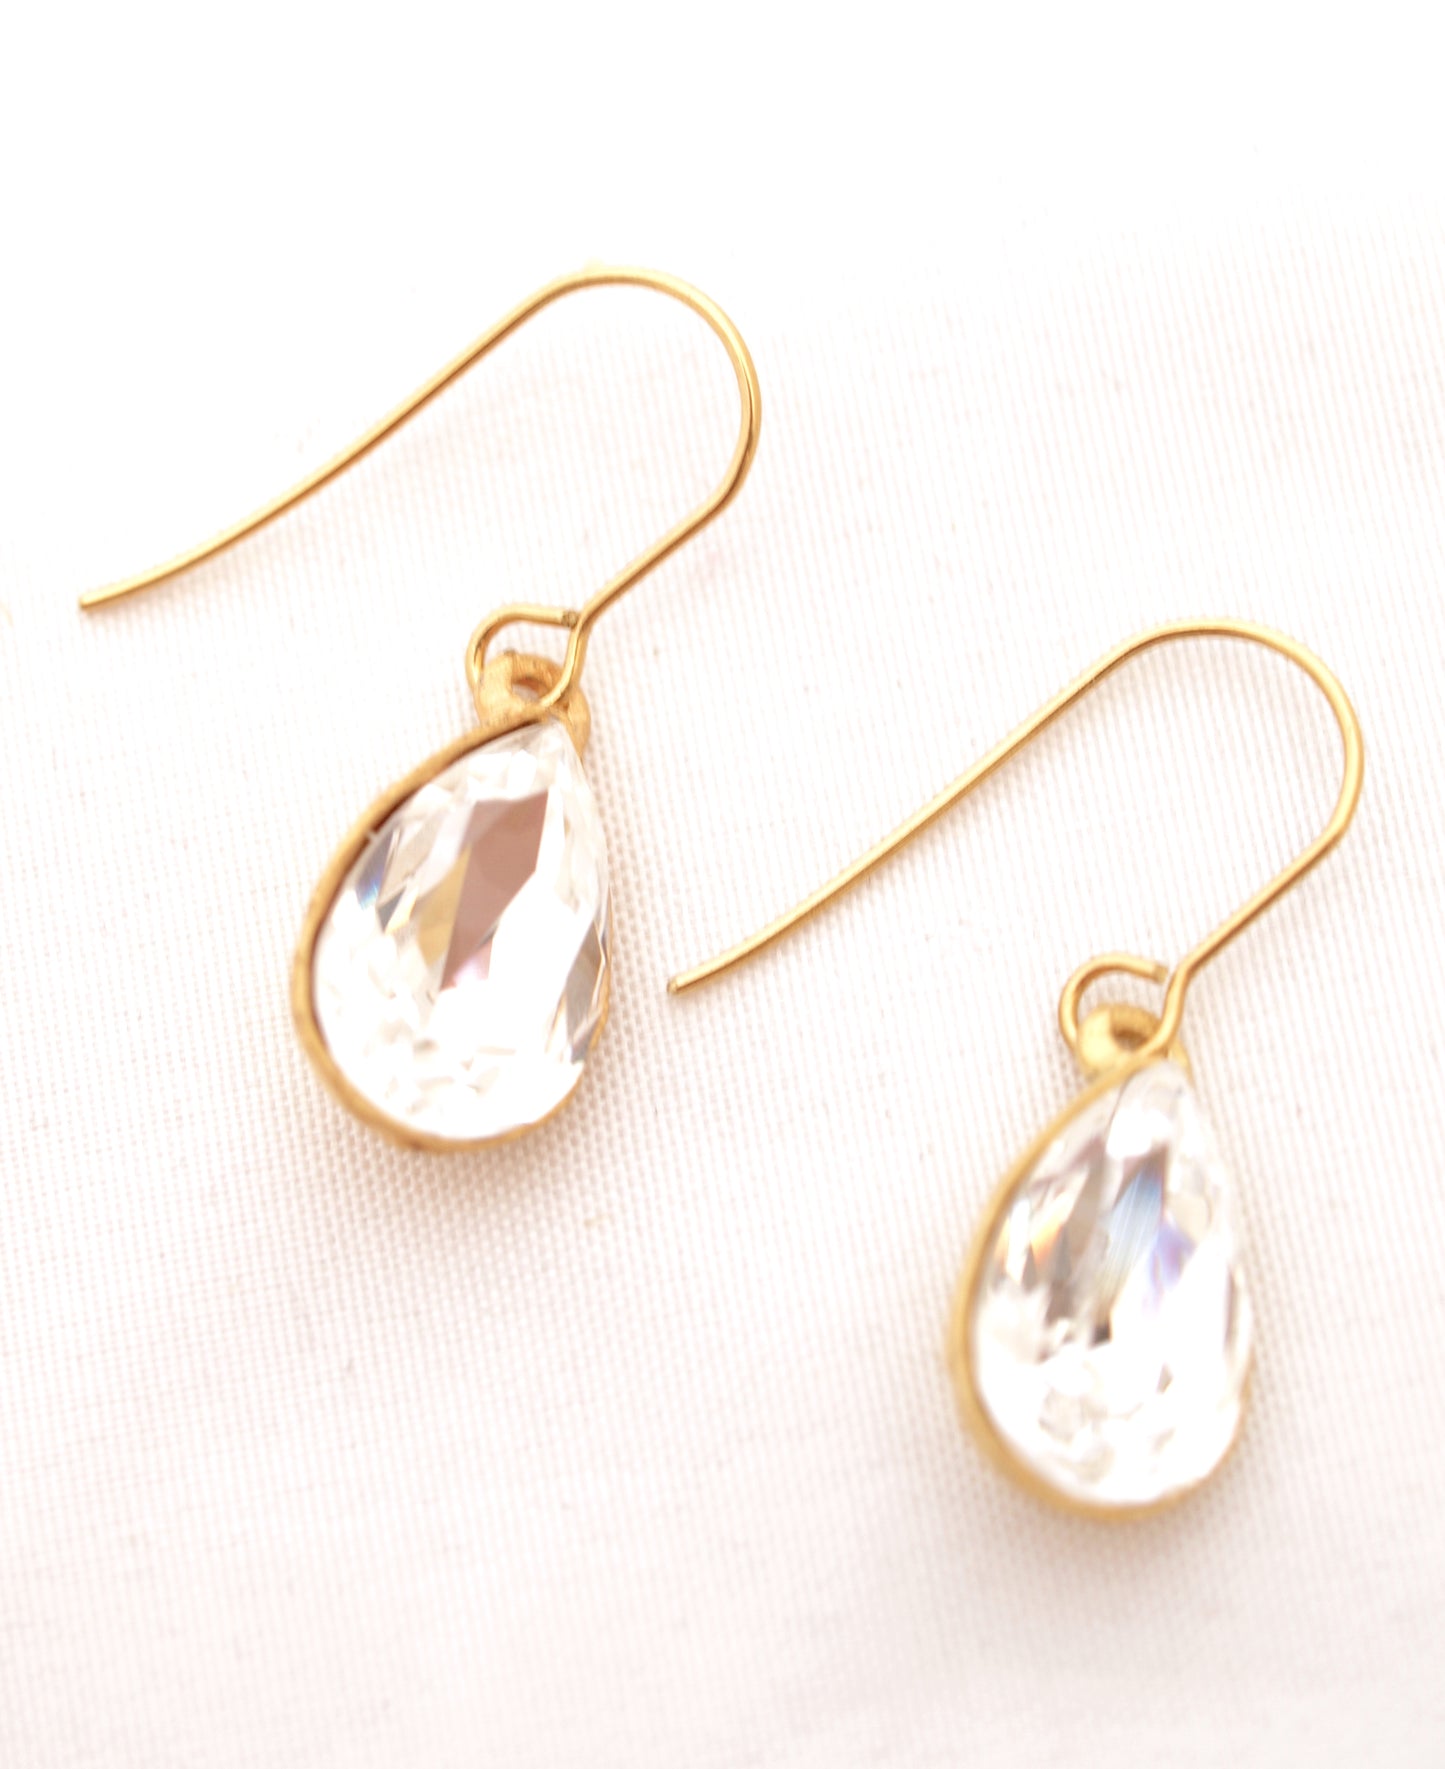 Pear shaped diamanté earrings